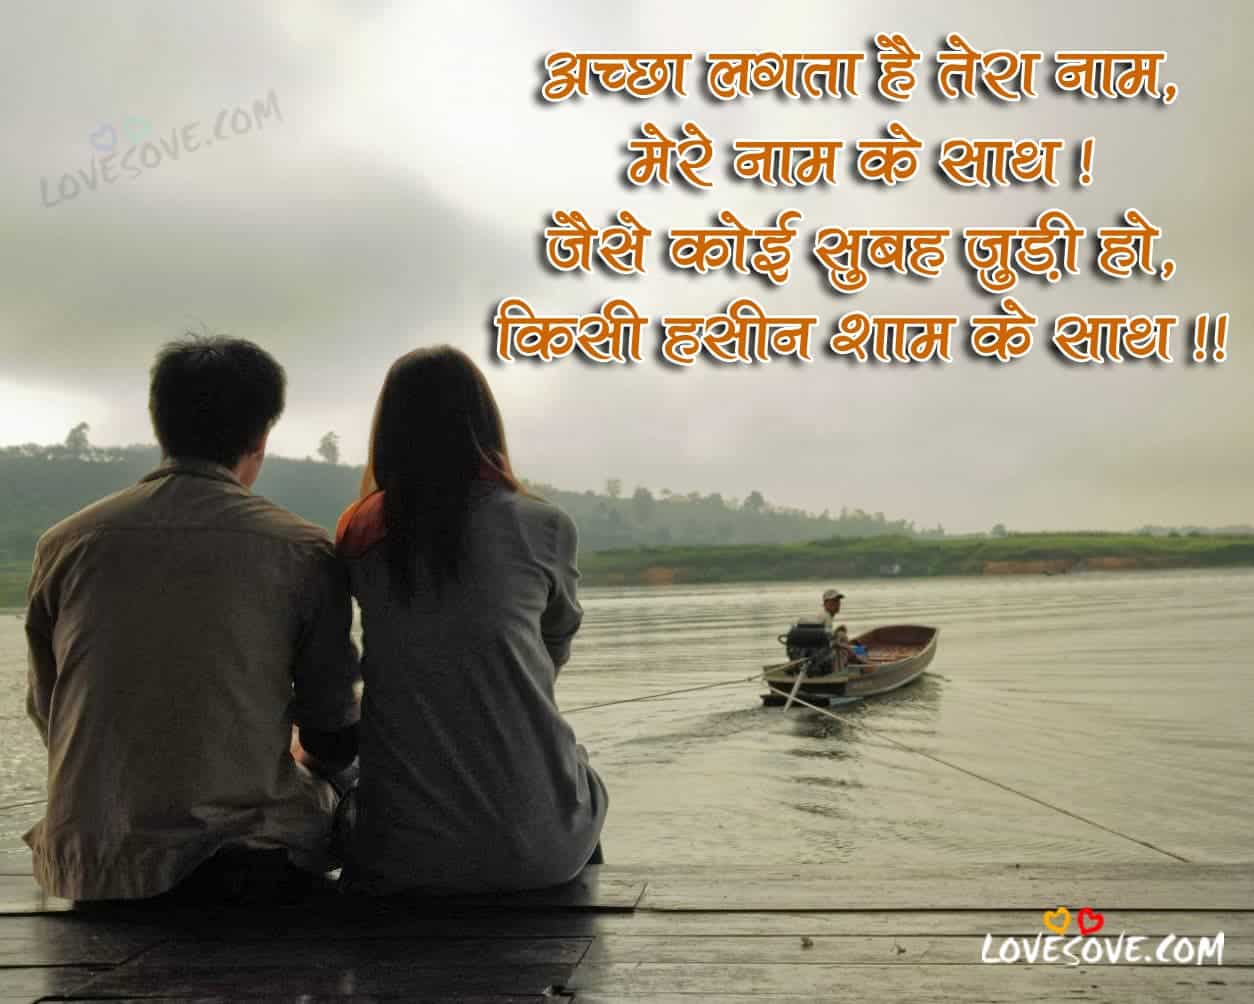 BRomantic Shayari, Love Shayari, Romantic Love Quotes in hindi